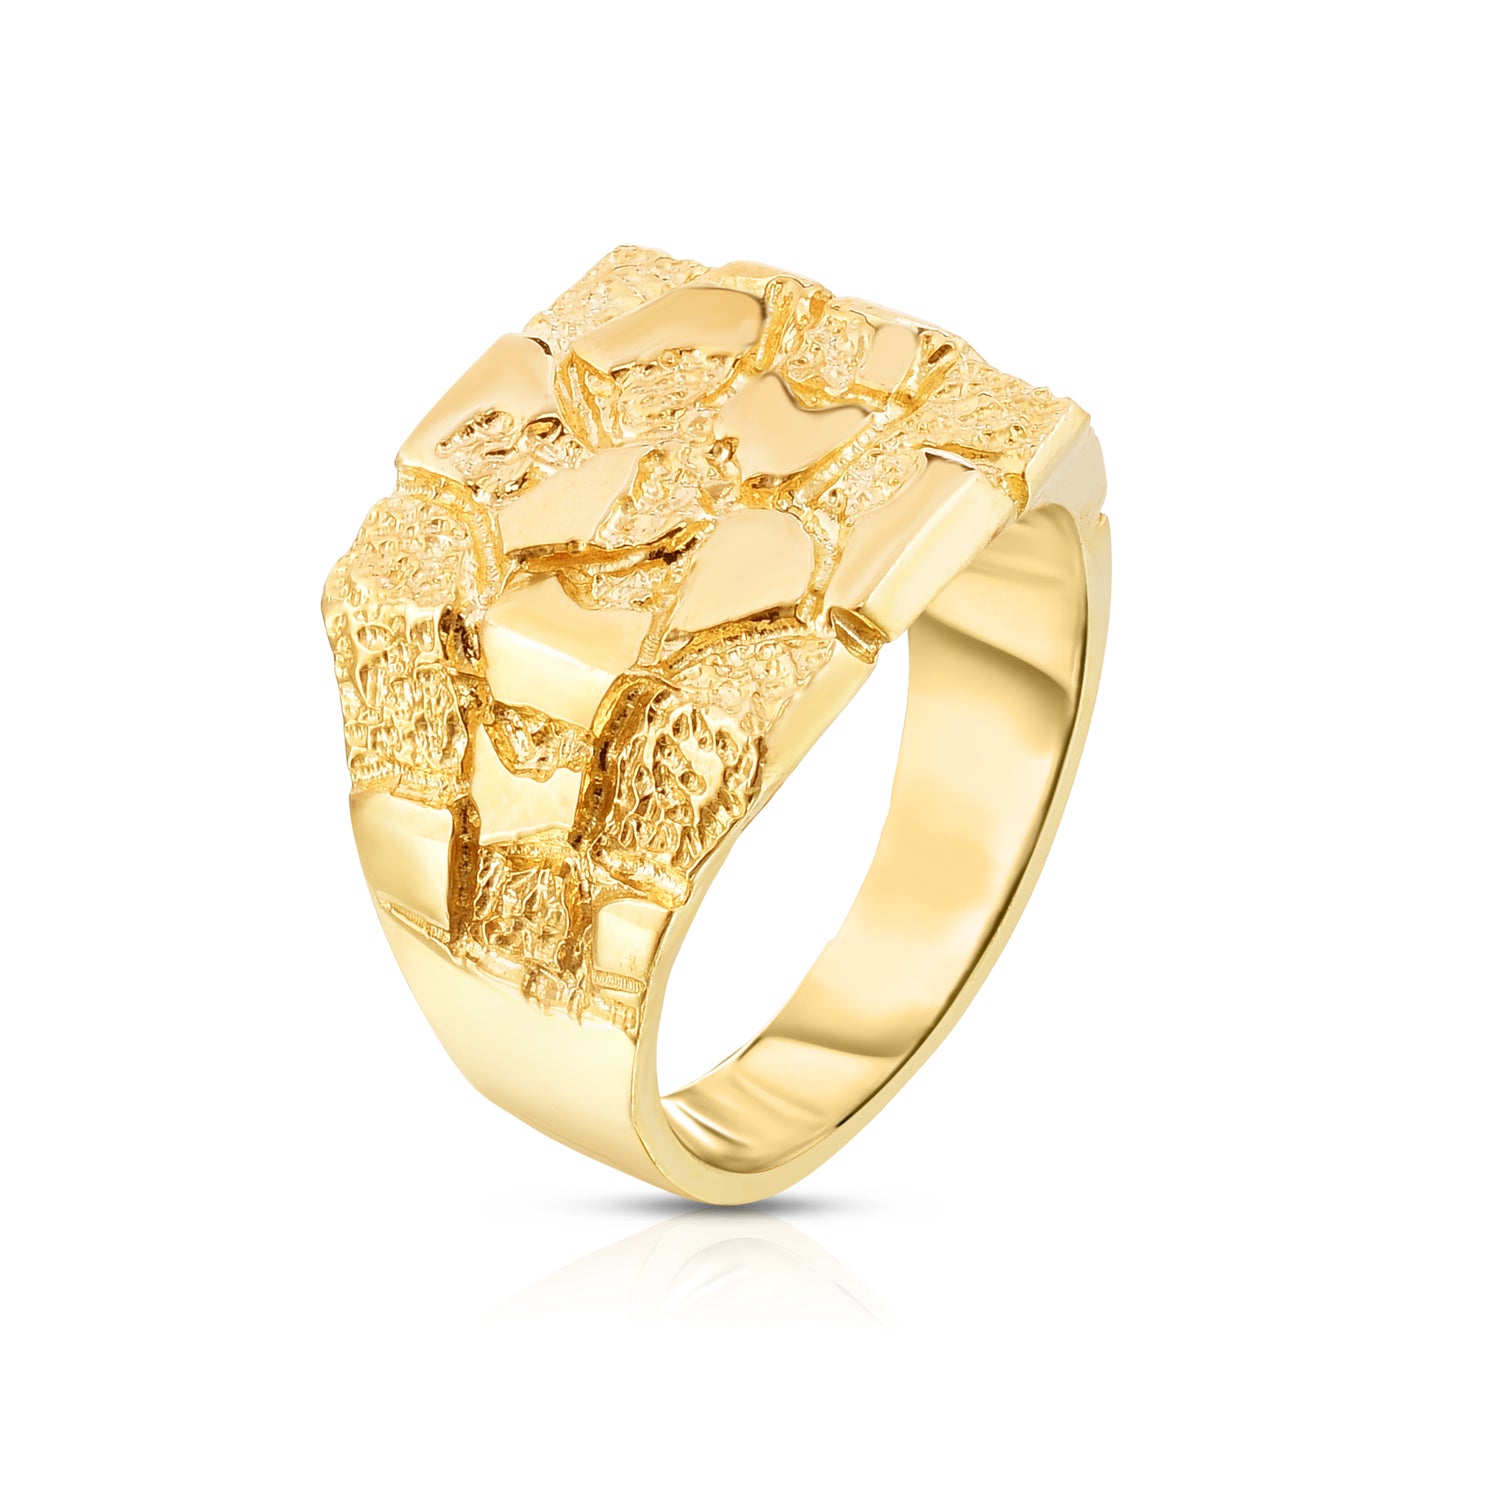 Floreo Men's 10k Yellow Gold 15.5mm Flat Square Dense Nugget Ring